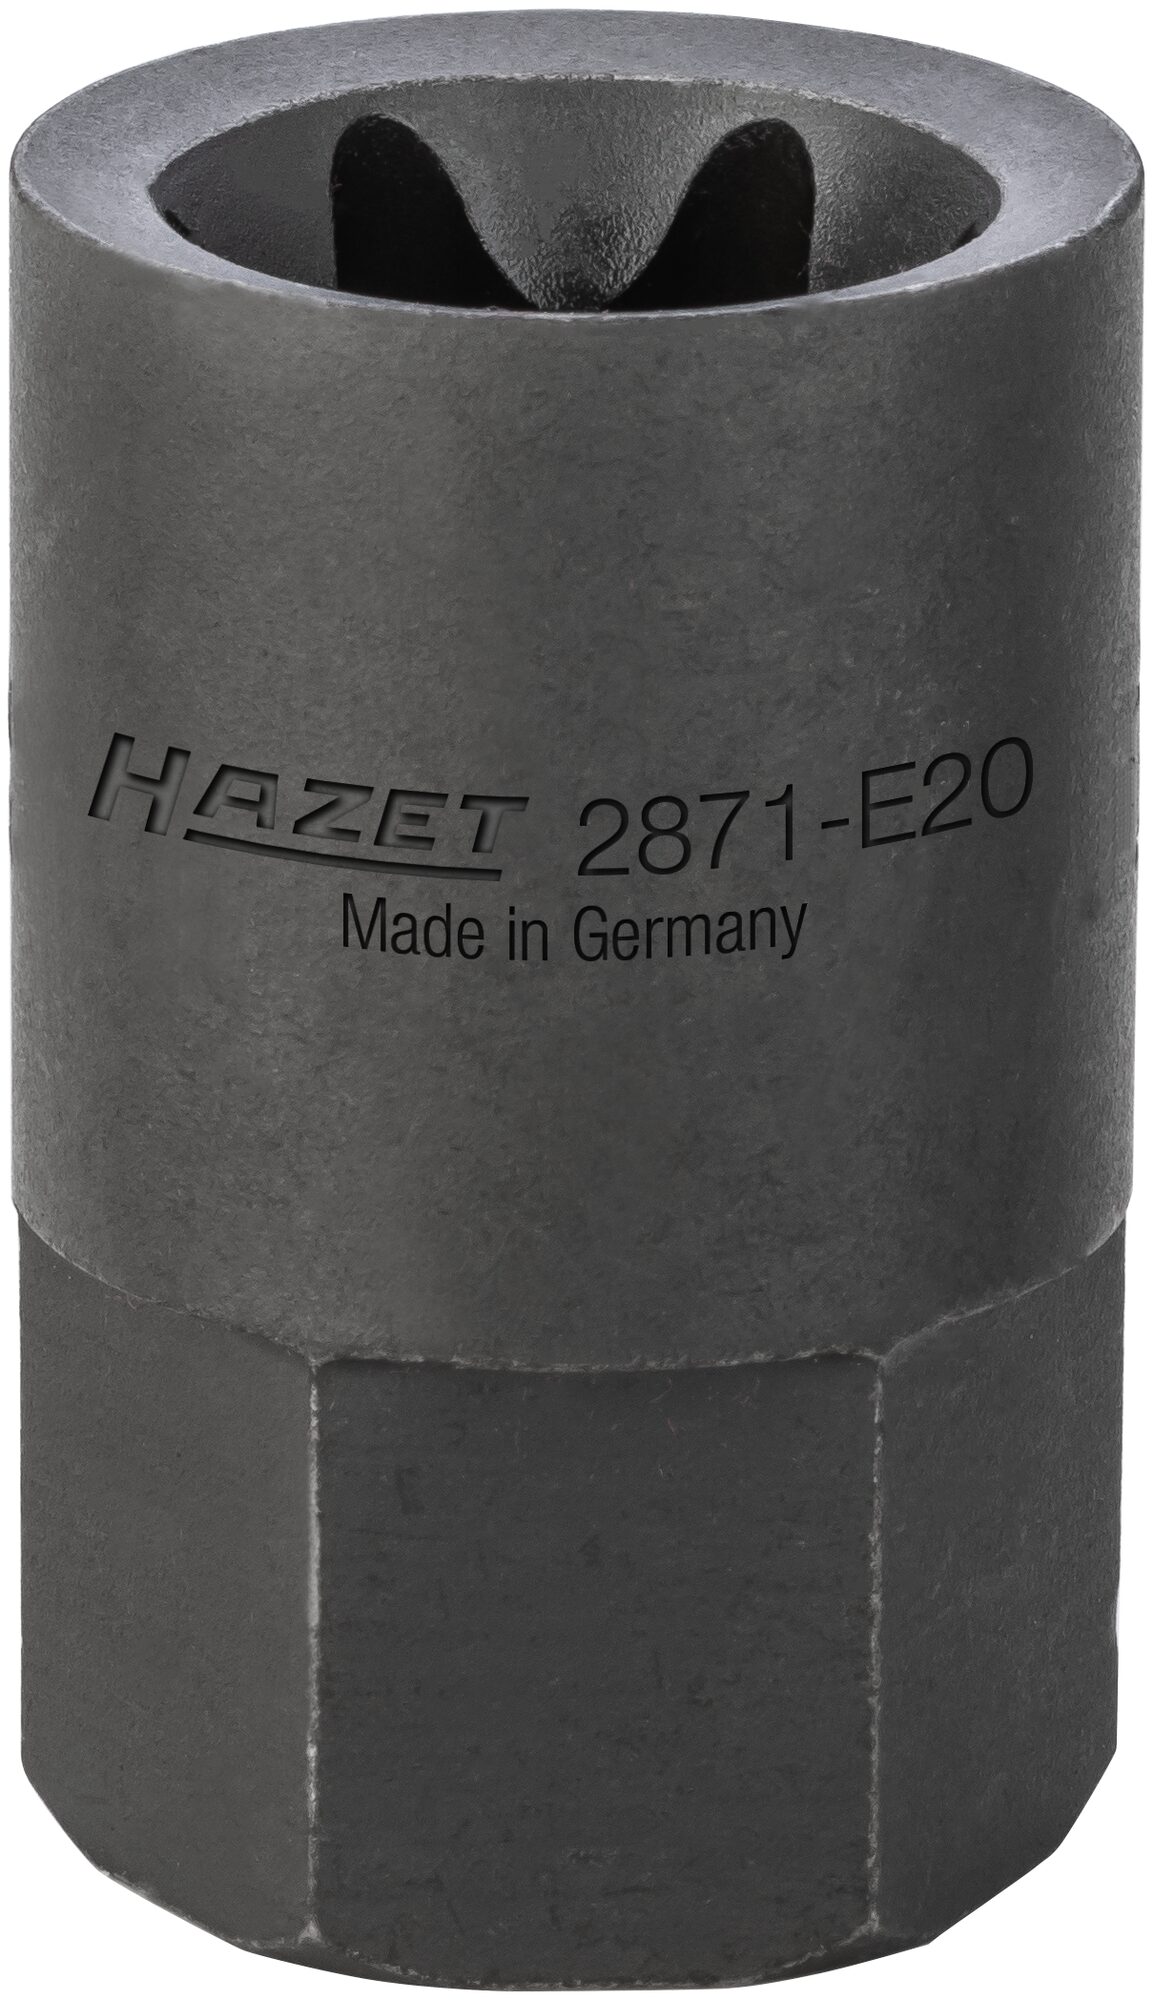 HAZET Bremssattel TORX® Einsatz 2871-E20 · Außen-Sechskant 22 mm · Außen TORX® Profil · E20